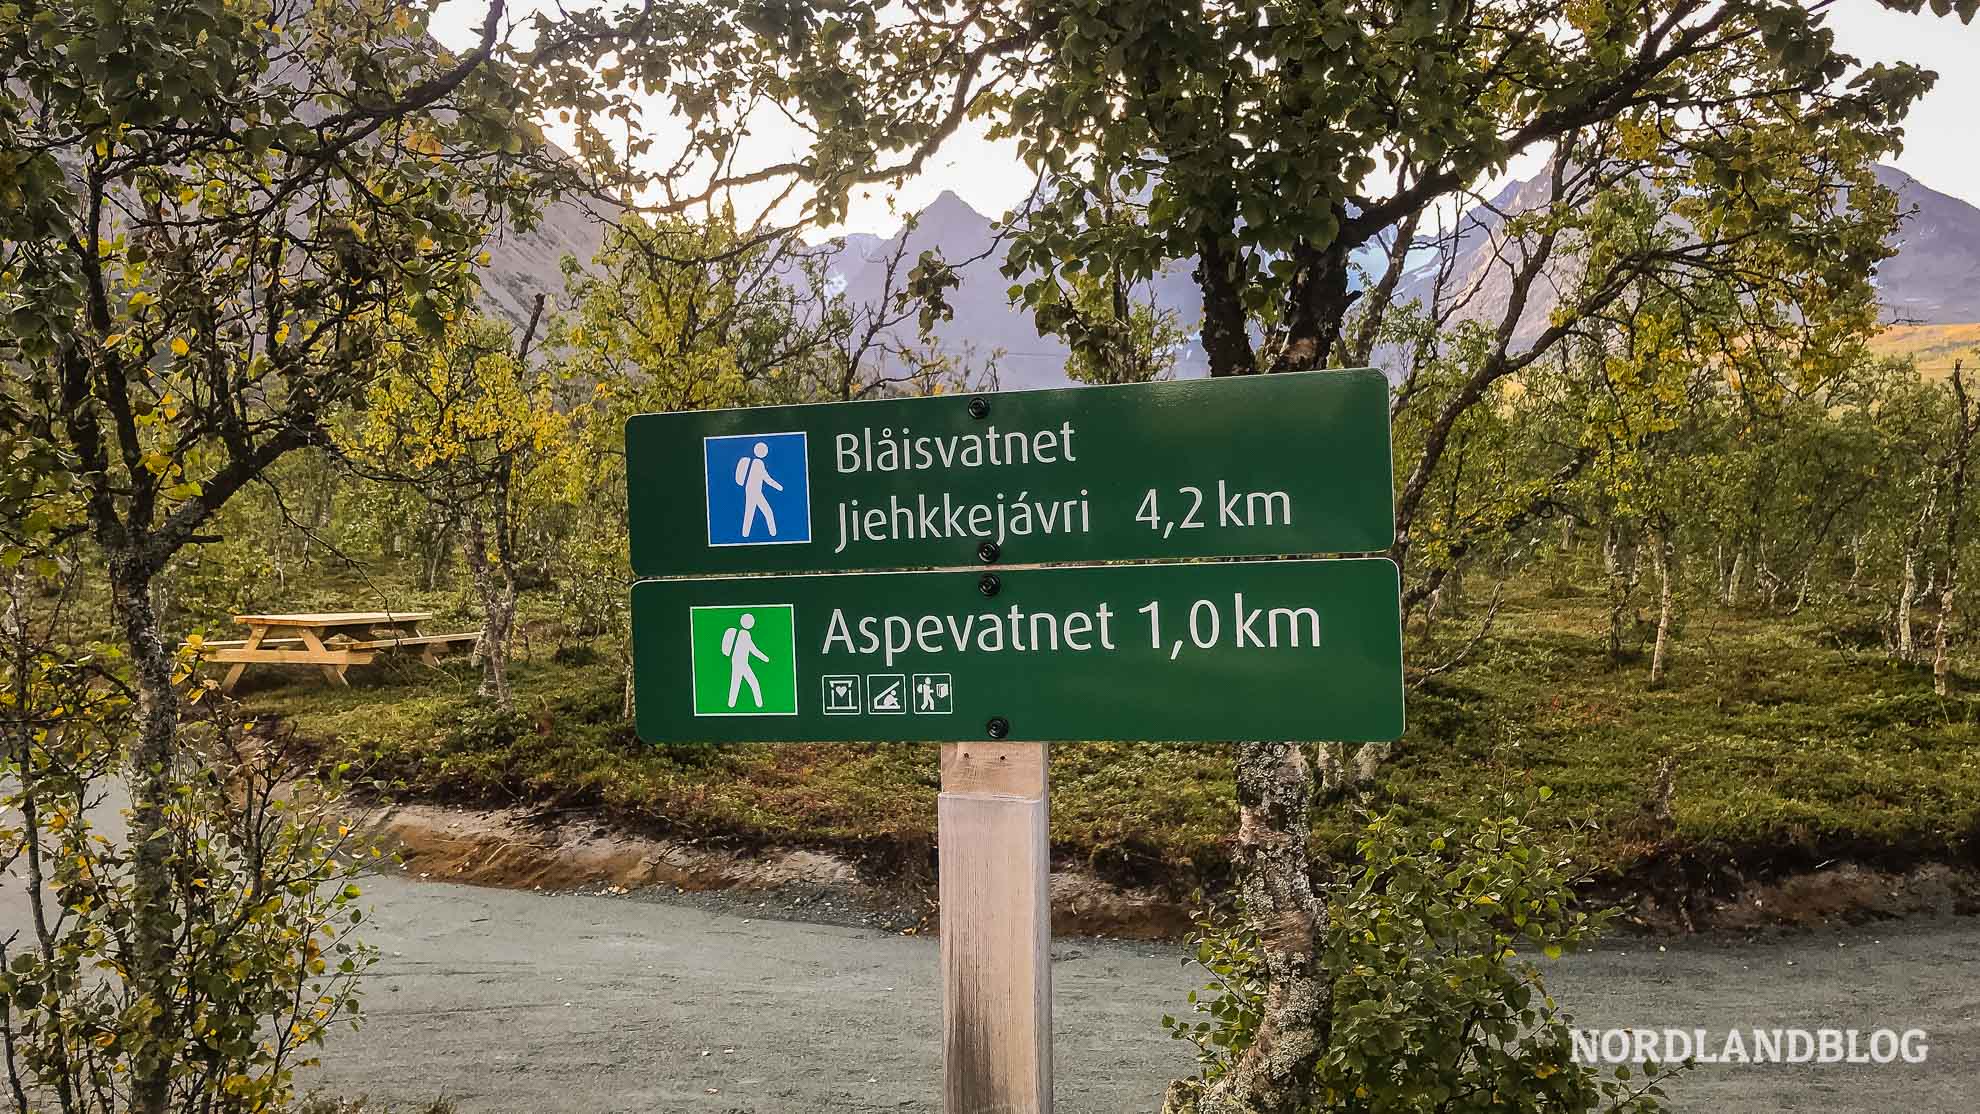 Wegweiser der Wanderung zum Blåisvatnet in den Lyngenalpen, Nordnorwegen